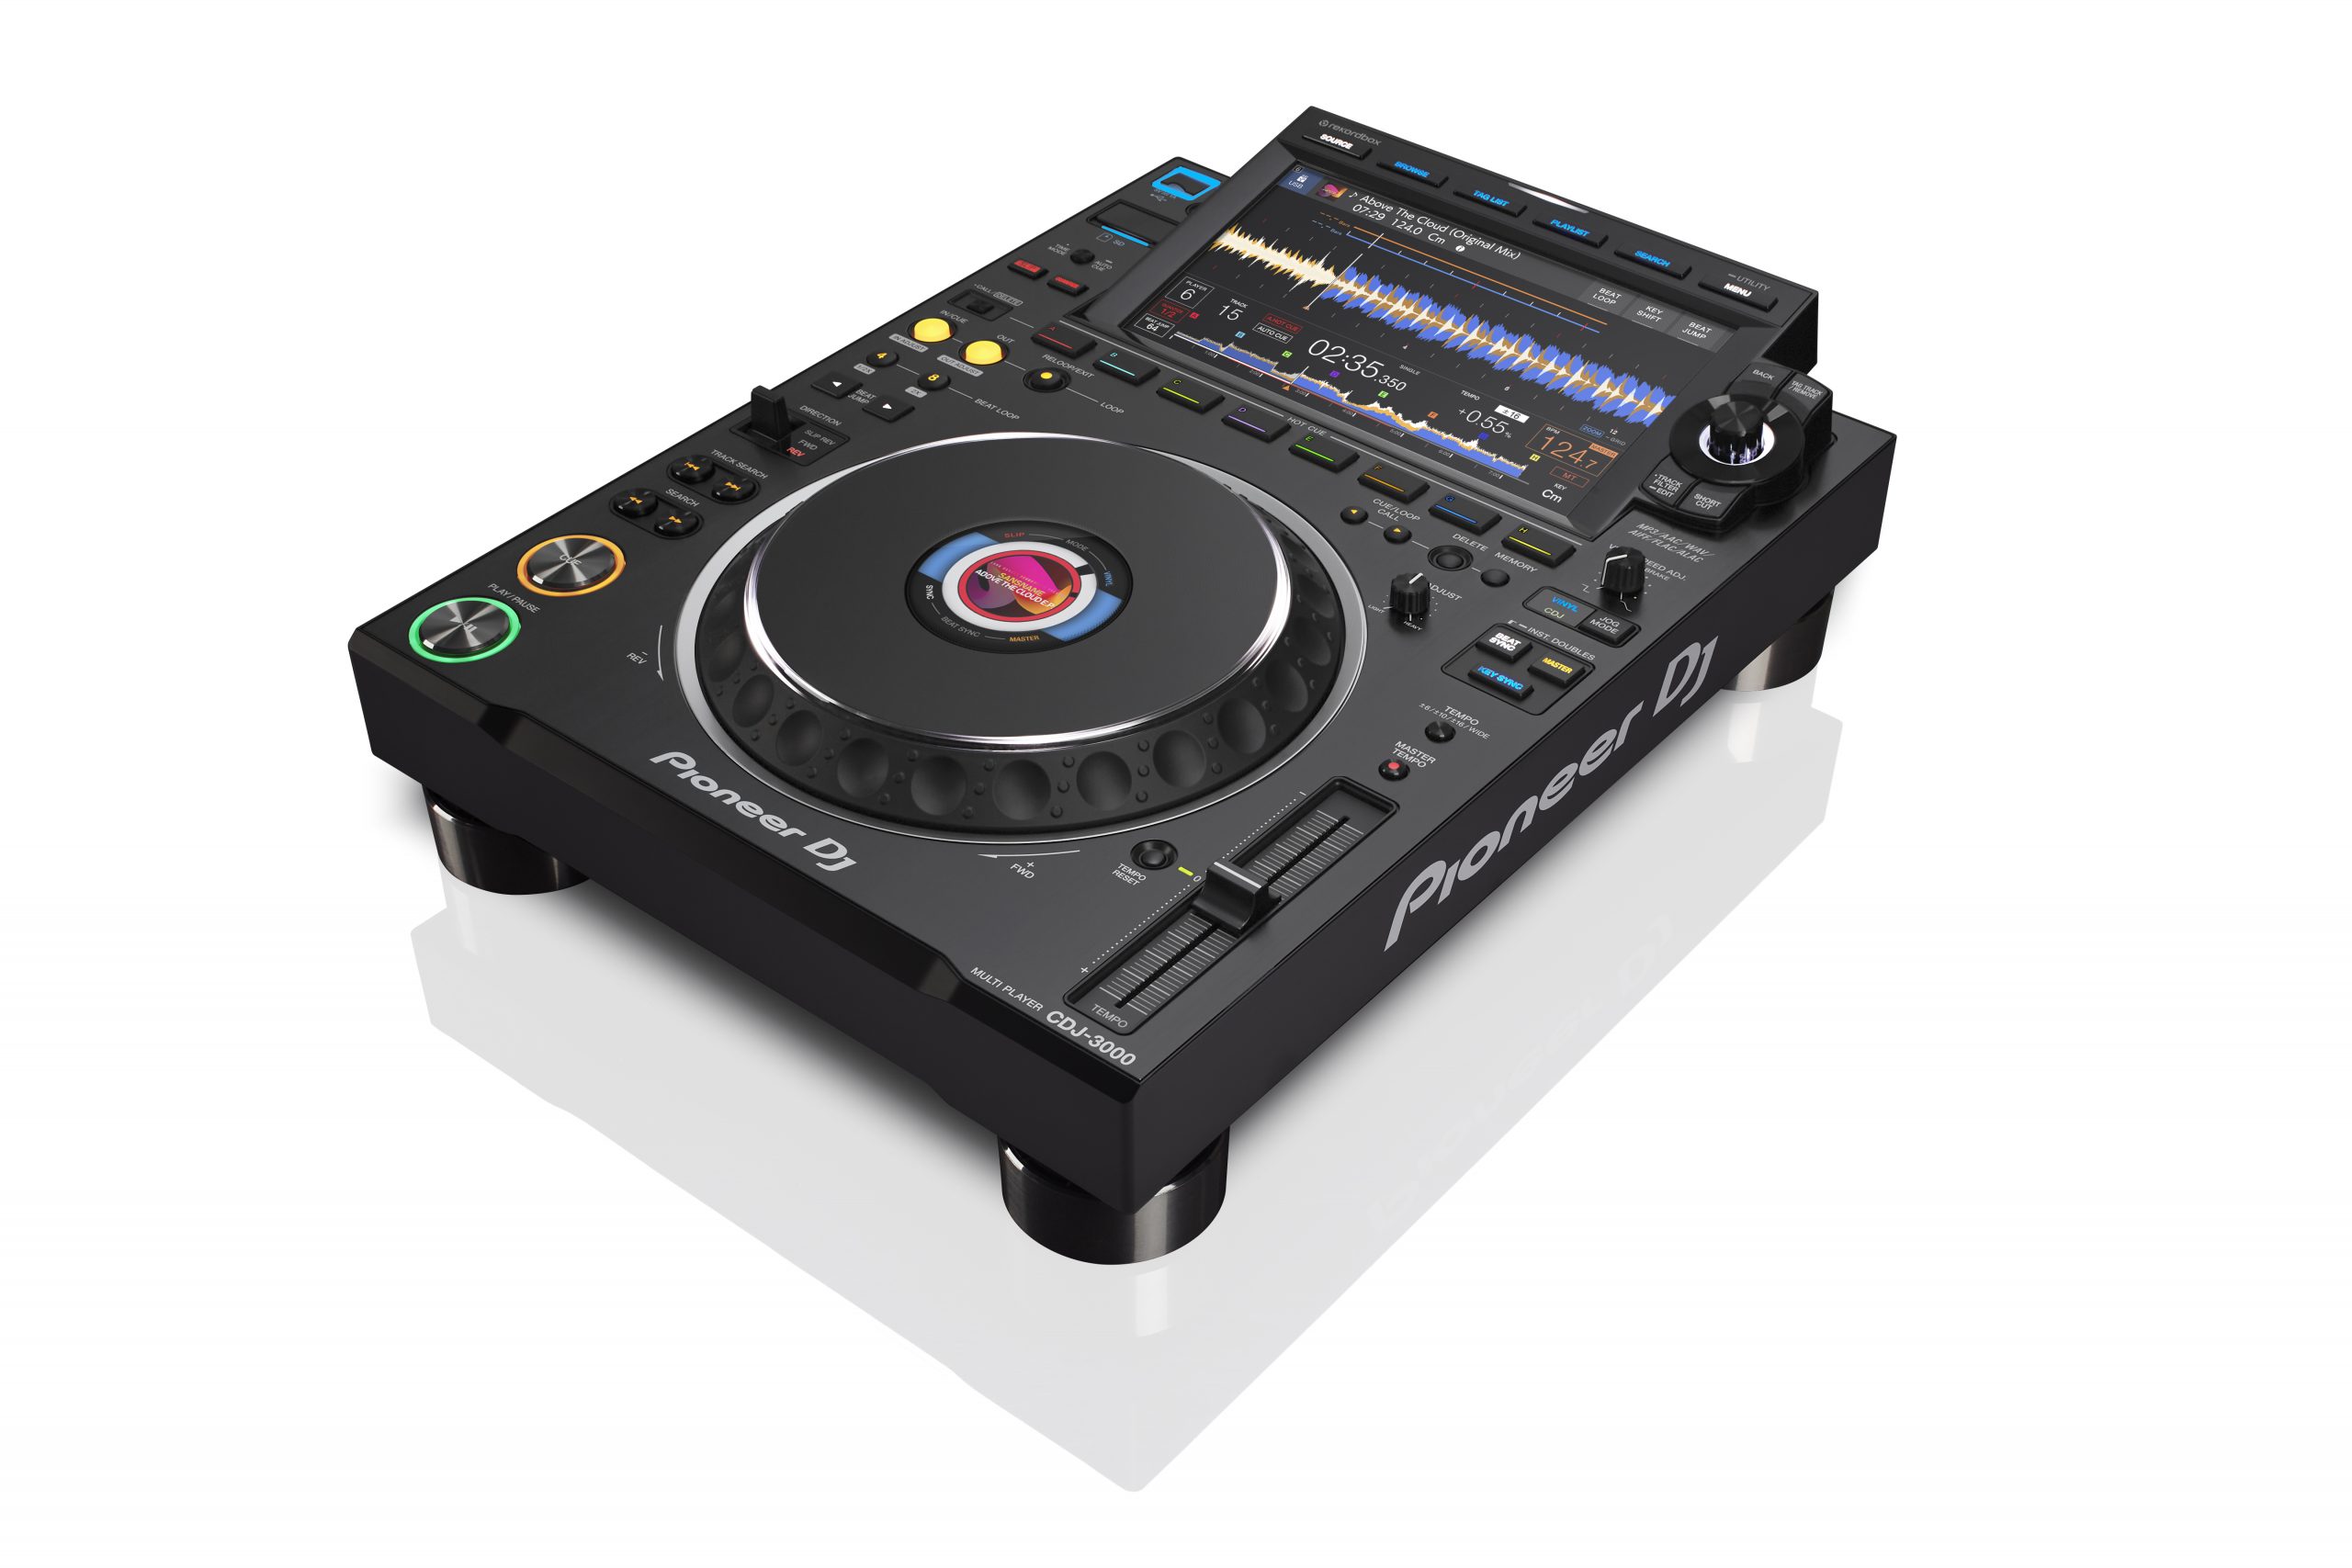 Pioneer CDJ-3000, nuevo reproductor de Pioneer DJ